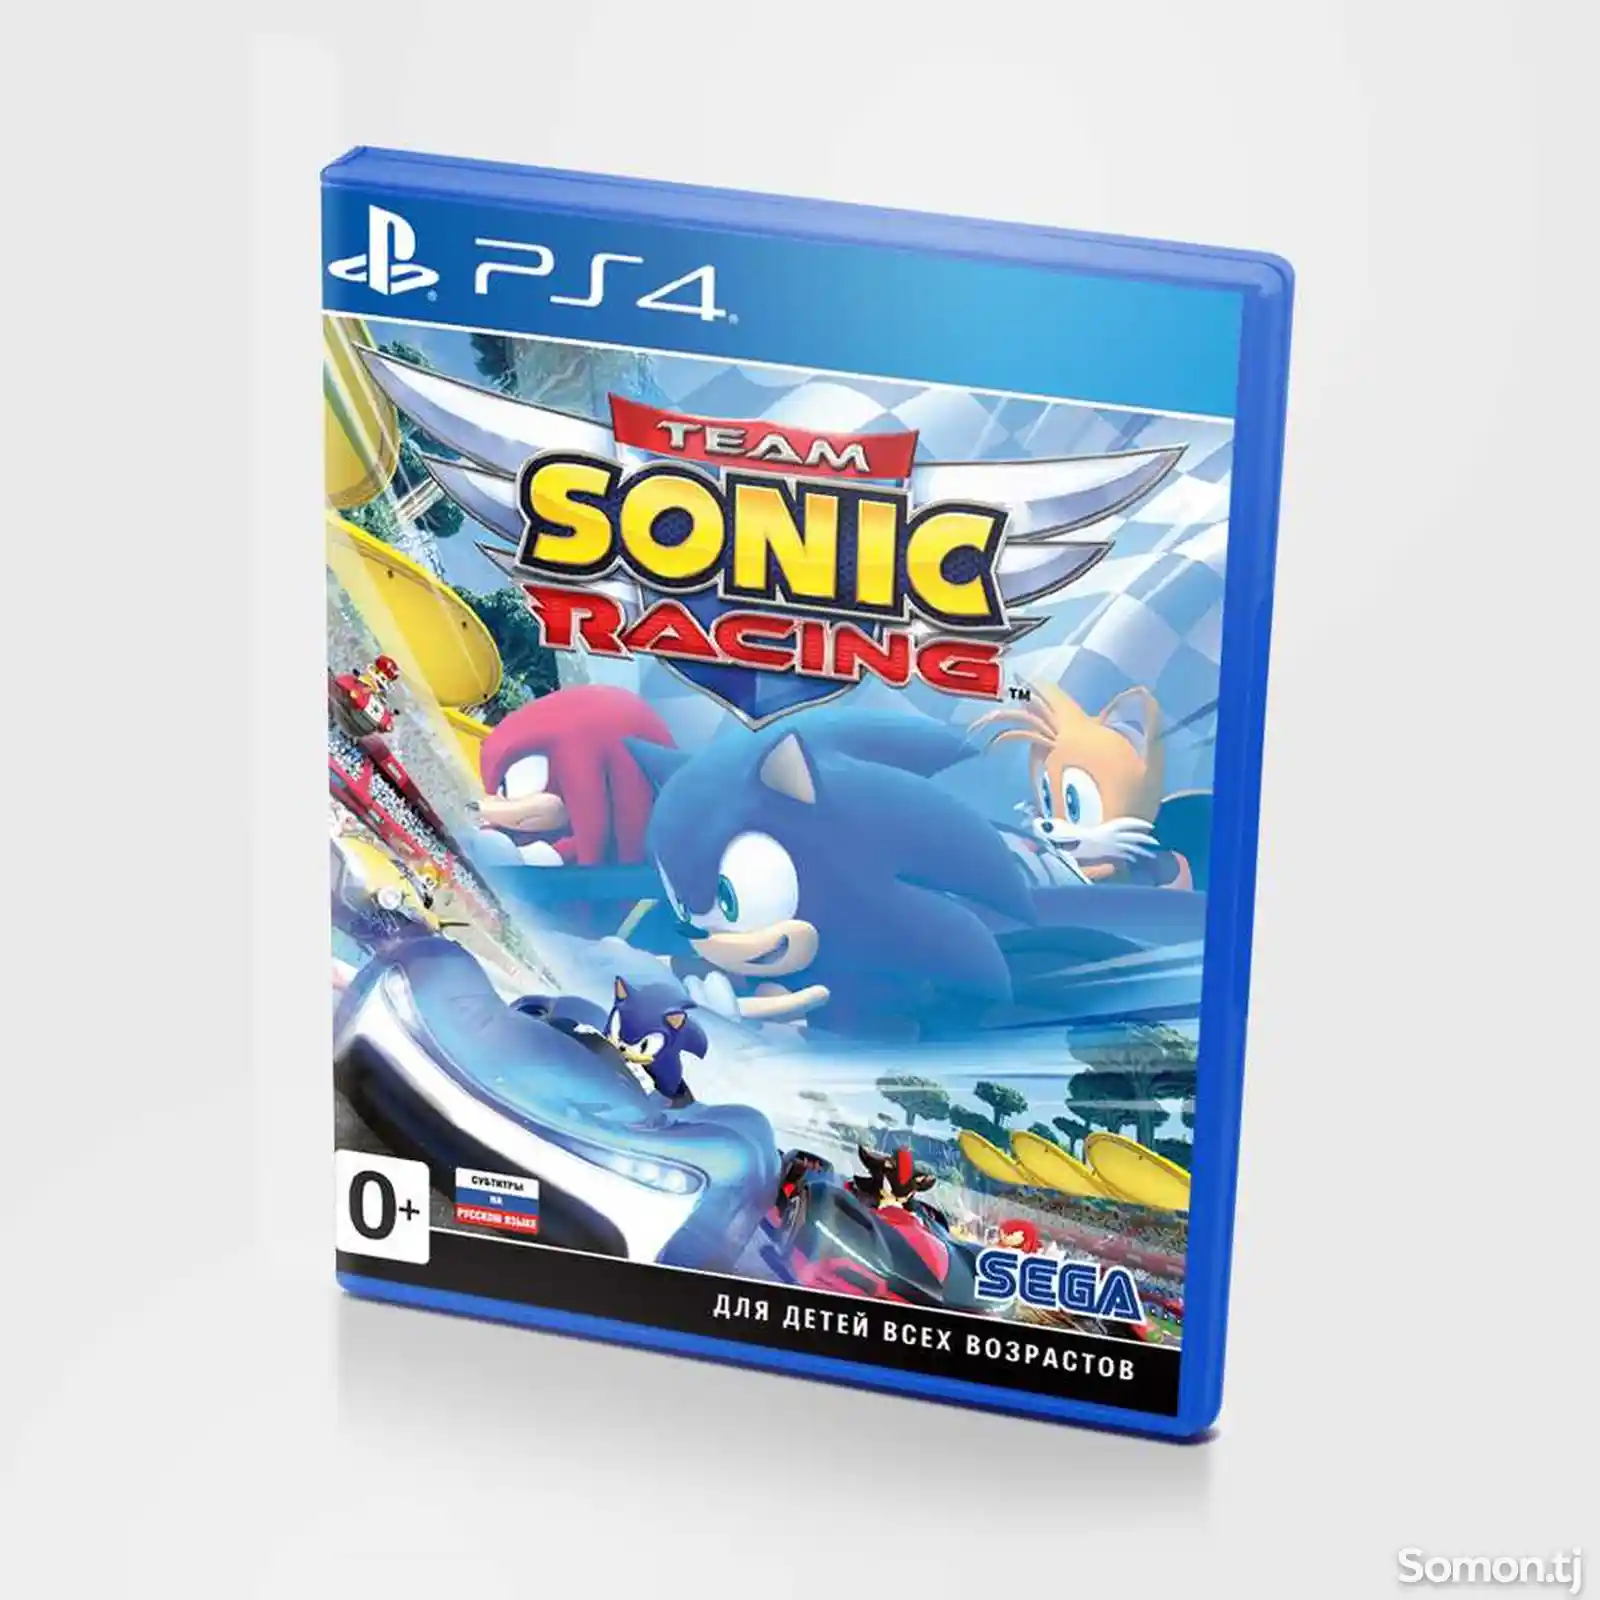 Игра Team Sonic Racing для PS-4 / 5.05 / 6.72 / 7.02 / 7.55 / 9.00 /-1